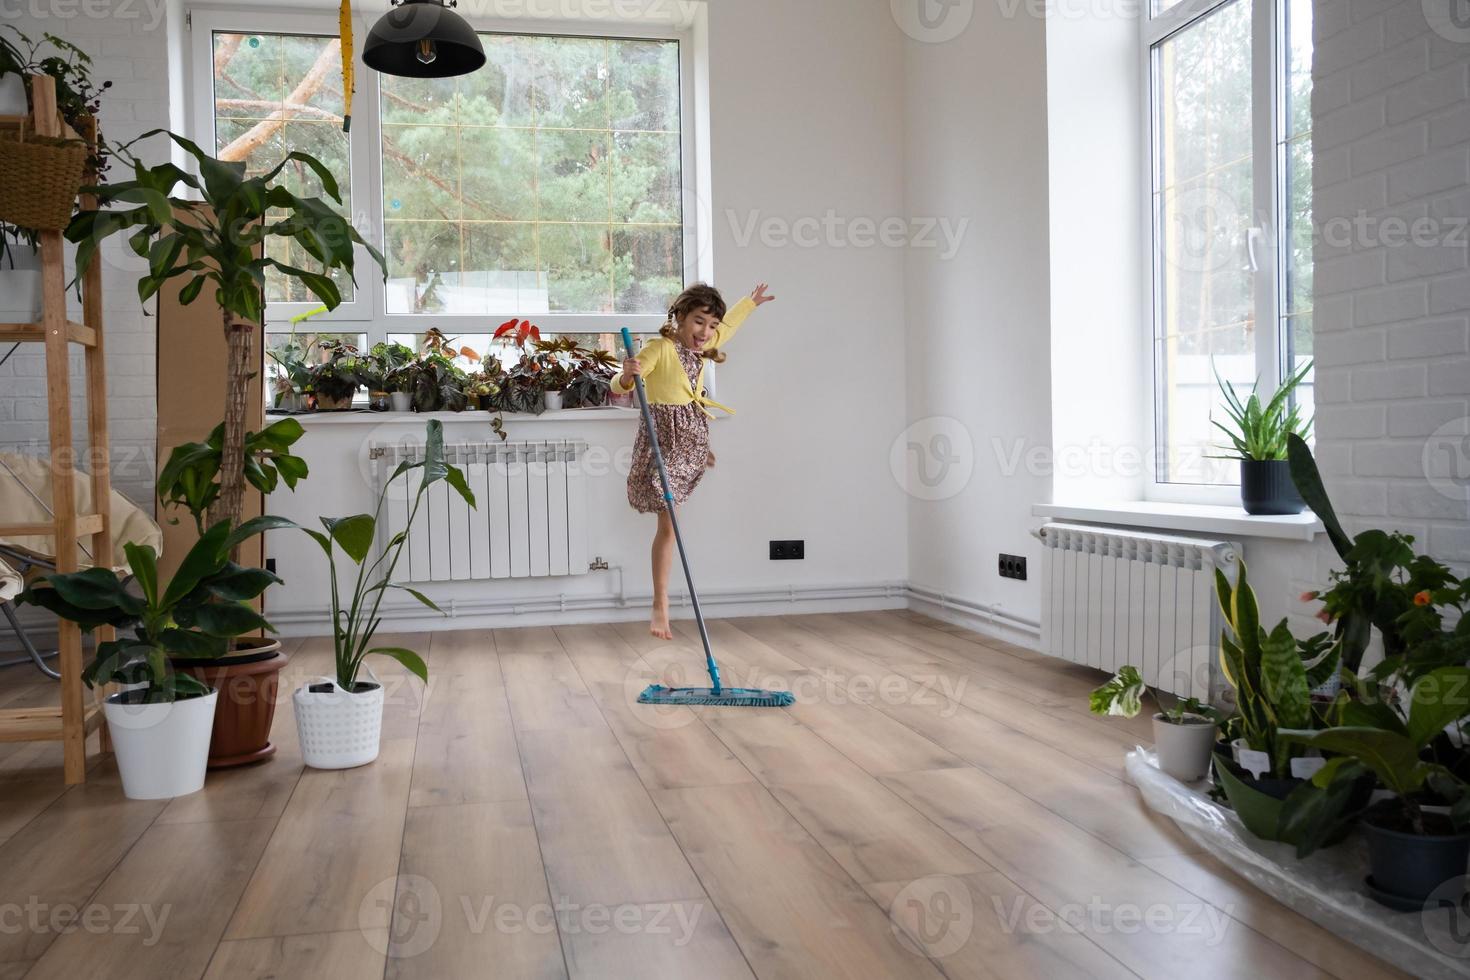 una chica baila con un trapeador para limpiar el suelo en una casa nueva - limpieza general en una habitación vacía, la alegría de moverse, ayuda con las tareas domésticas foto